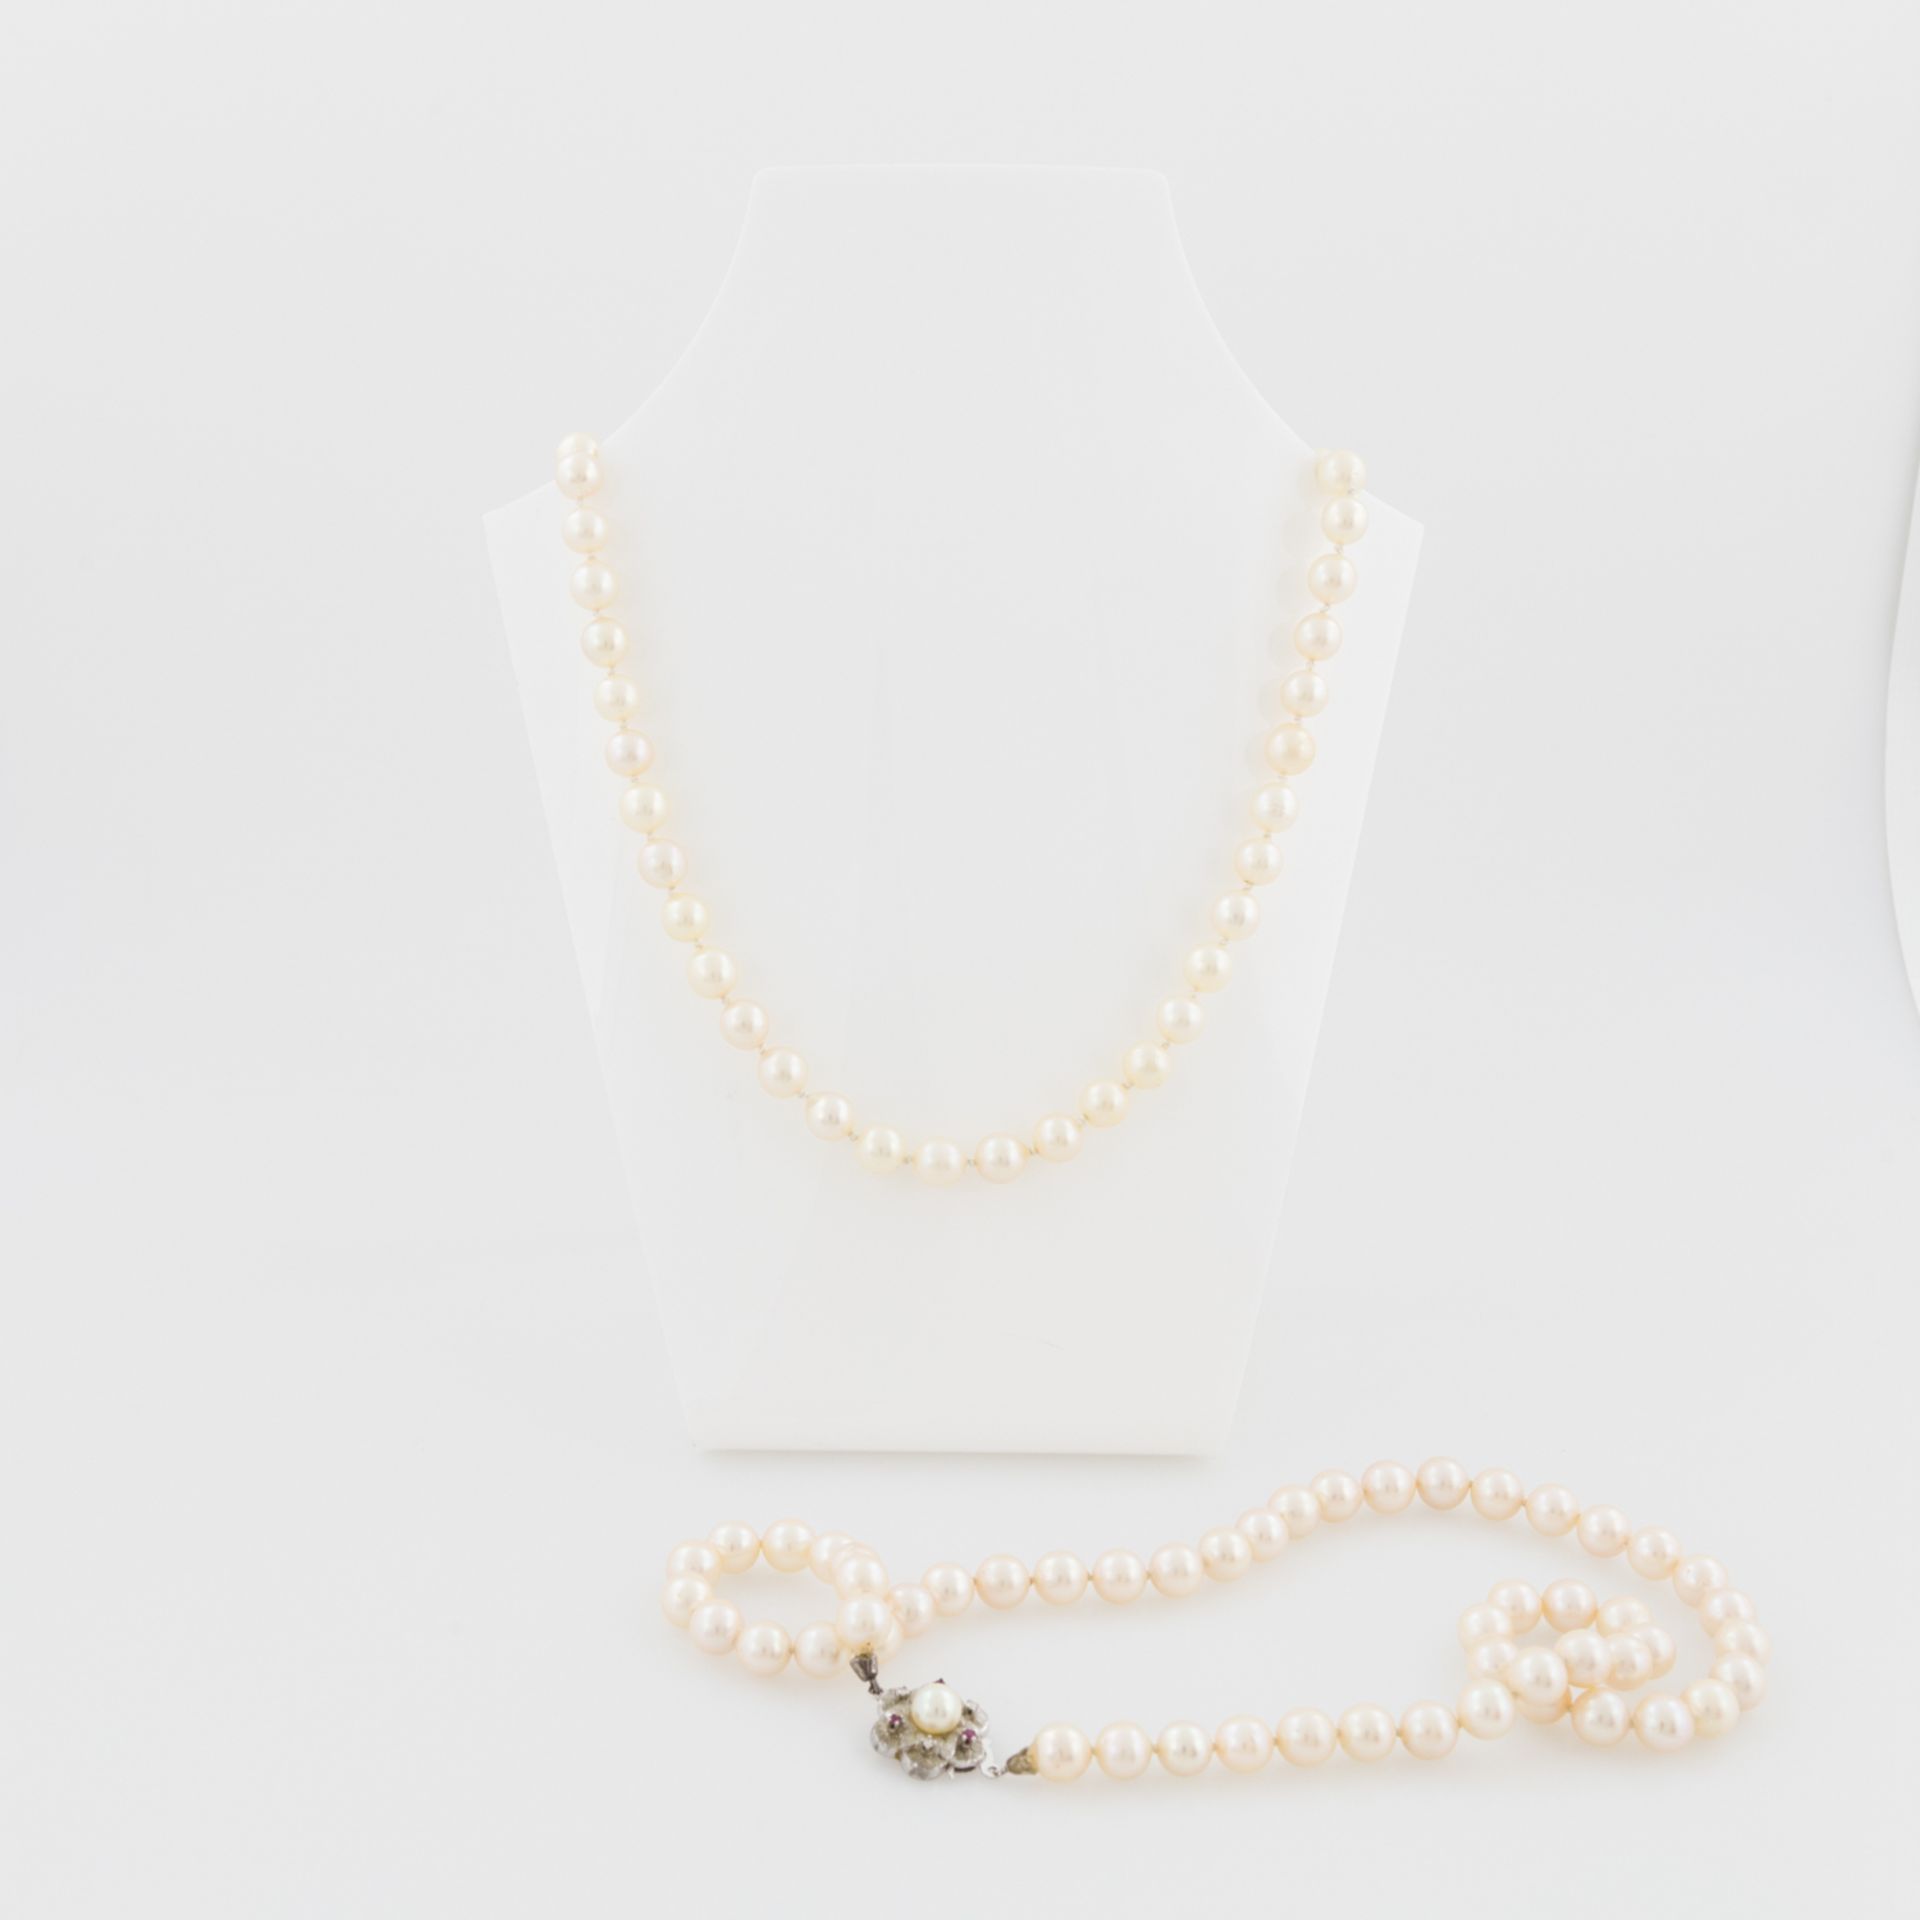 Konvolut: 2 Perlencolliers : 1 x Perlencollier Zuchtperlen ca. 6 mm mit Schließe WG 14 K bes. mit